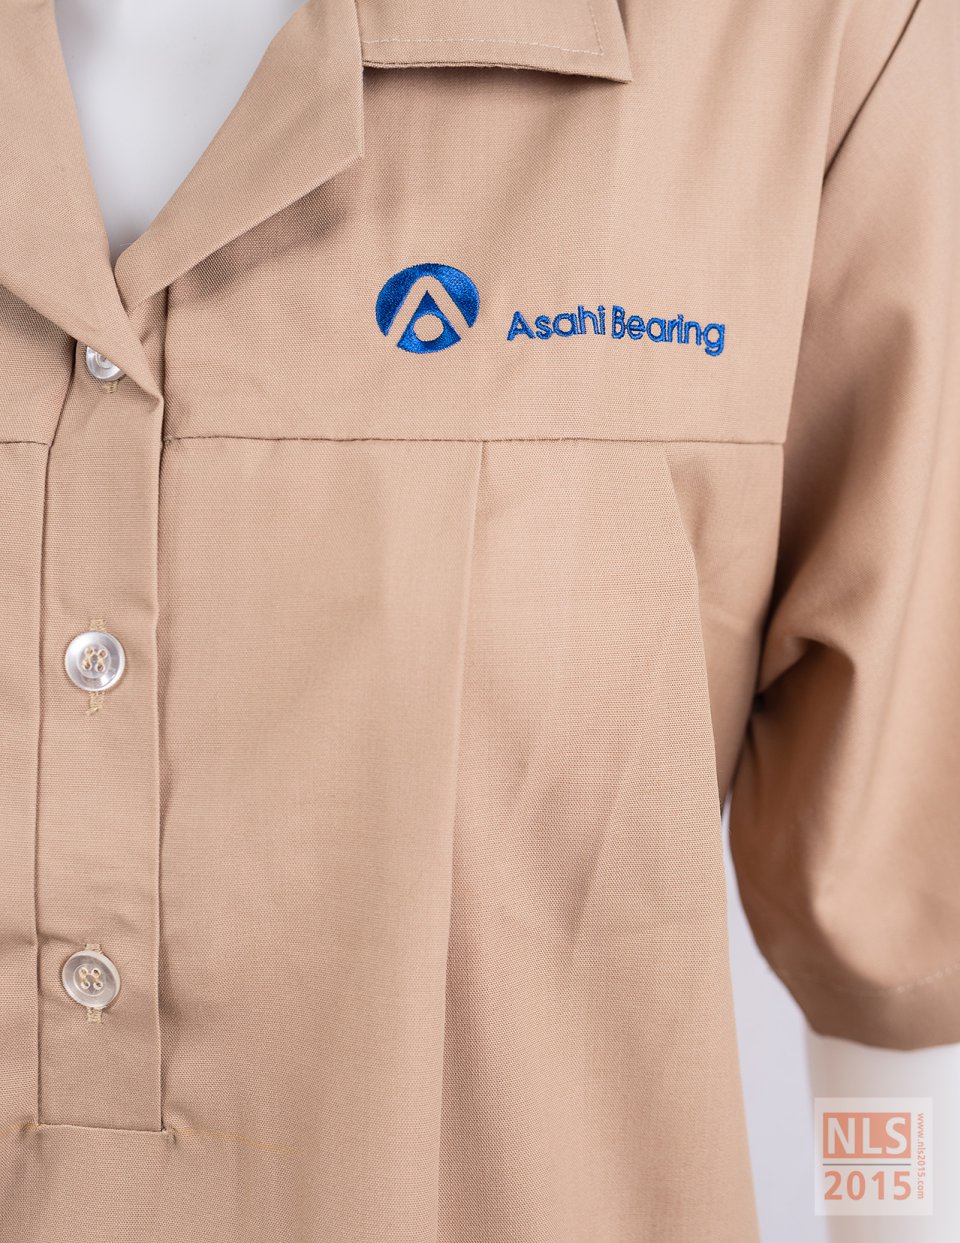 ตัวอย่างชุดคลุมท้องพนักงานบริษัท Asahi Bearing / นลินสิริ รับผลิตชุดคลุมท้องพนักงานโรงงานรูปที่ 